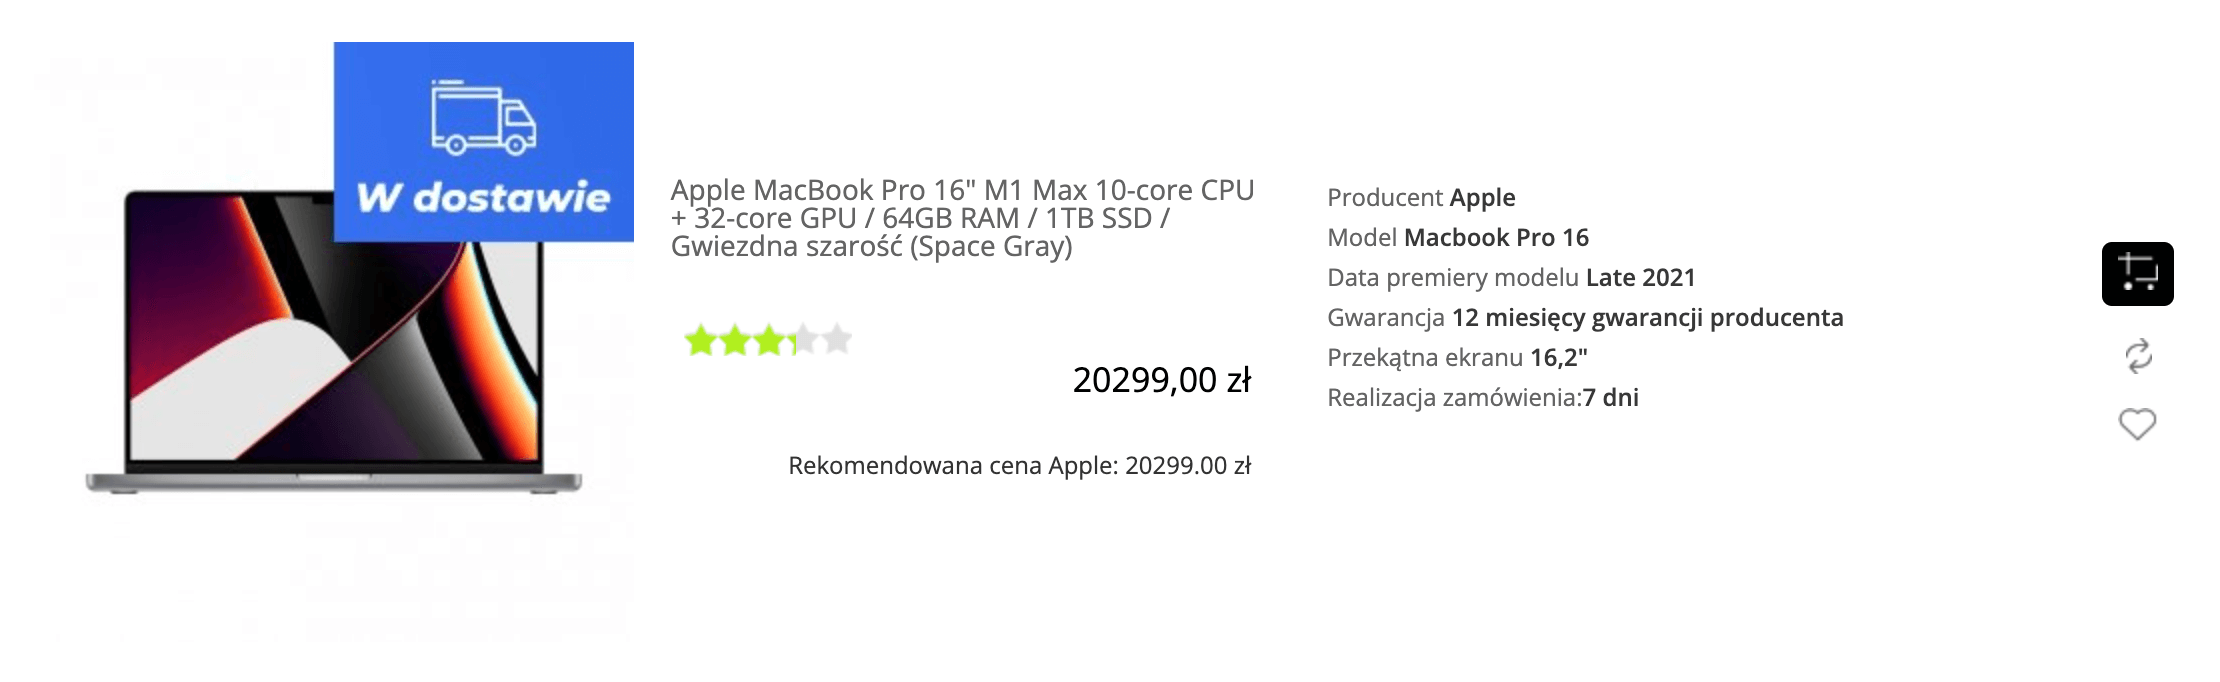 Apple MacBook Pro 16 cala M1 Max 10-core CPU + 32-core GPU / 64GB RAM / 1TB SSD / Gwiezdna szarość (Space Gray) - MK183ZE/A/P2/R2/D1